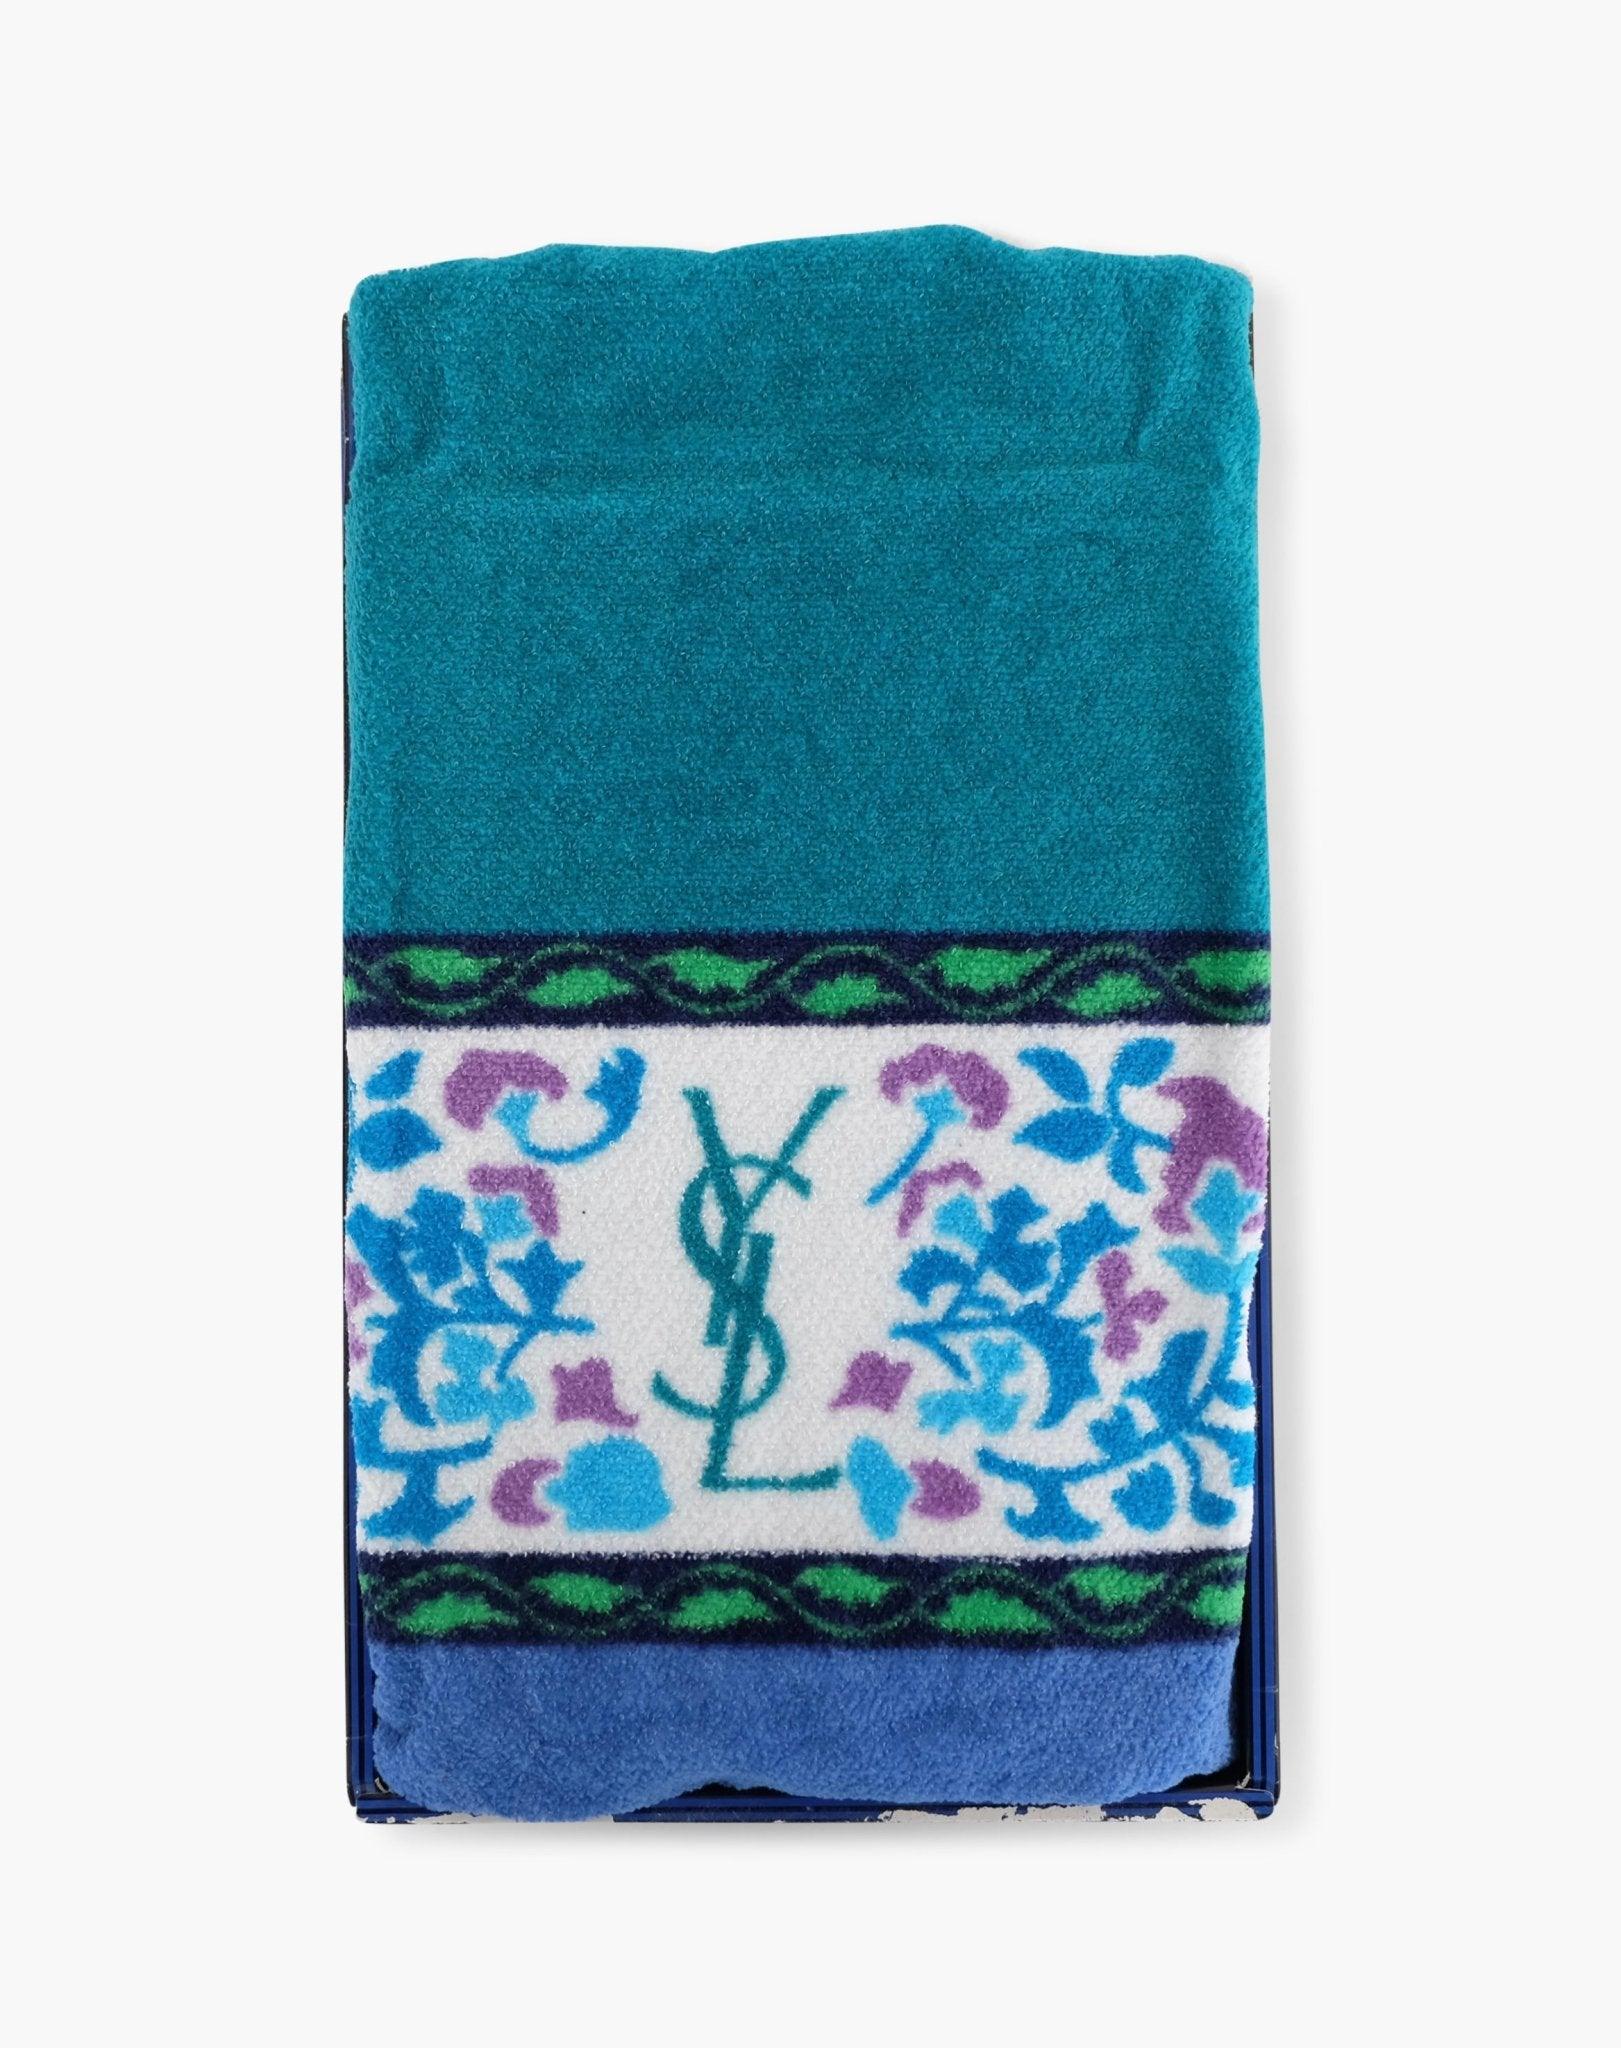 Vintage YSL Print Bath Towel - Volver